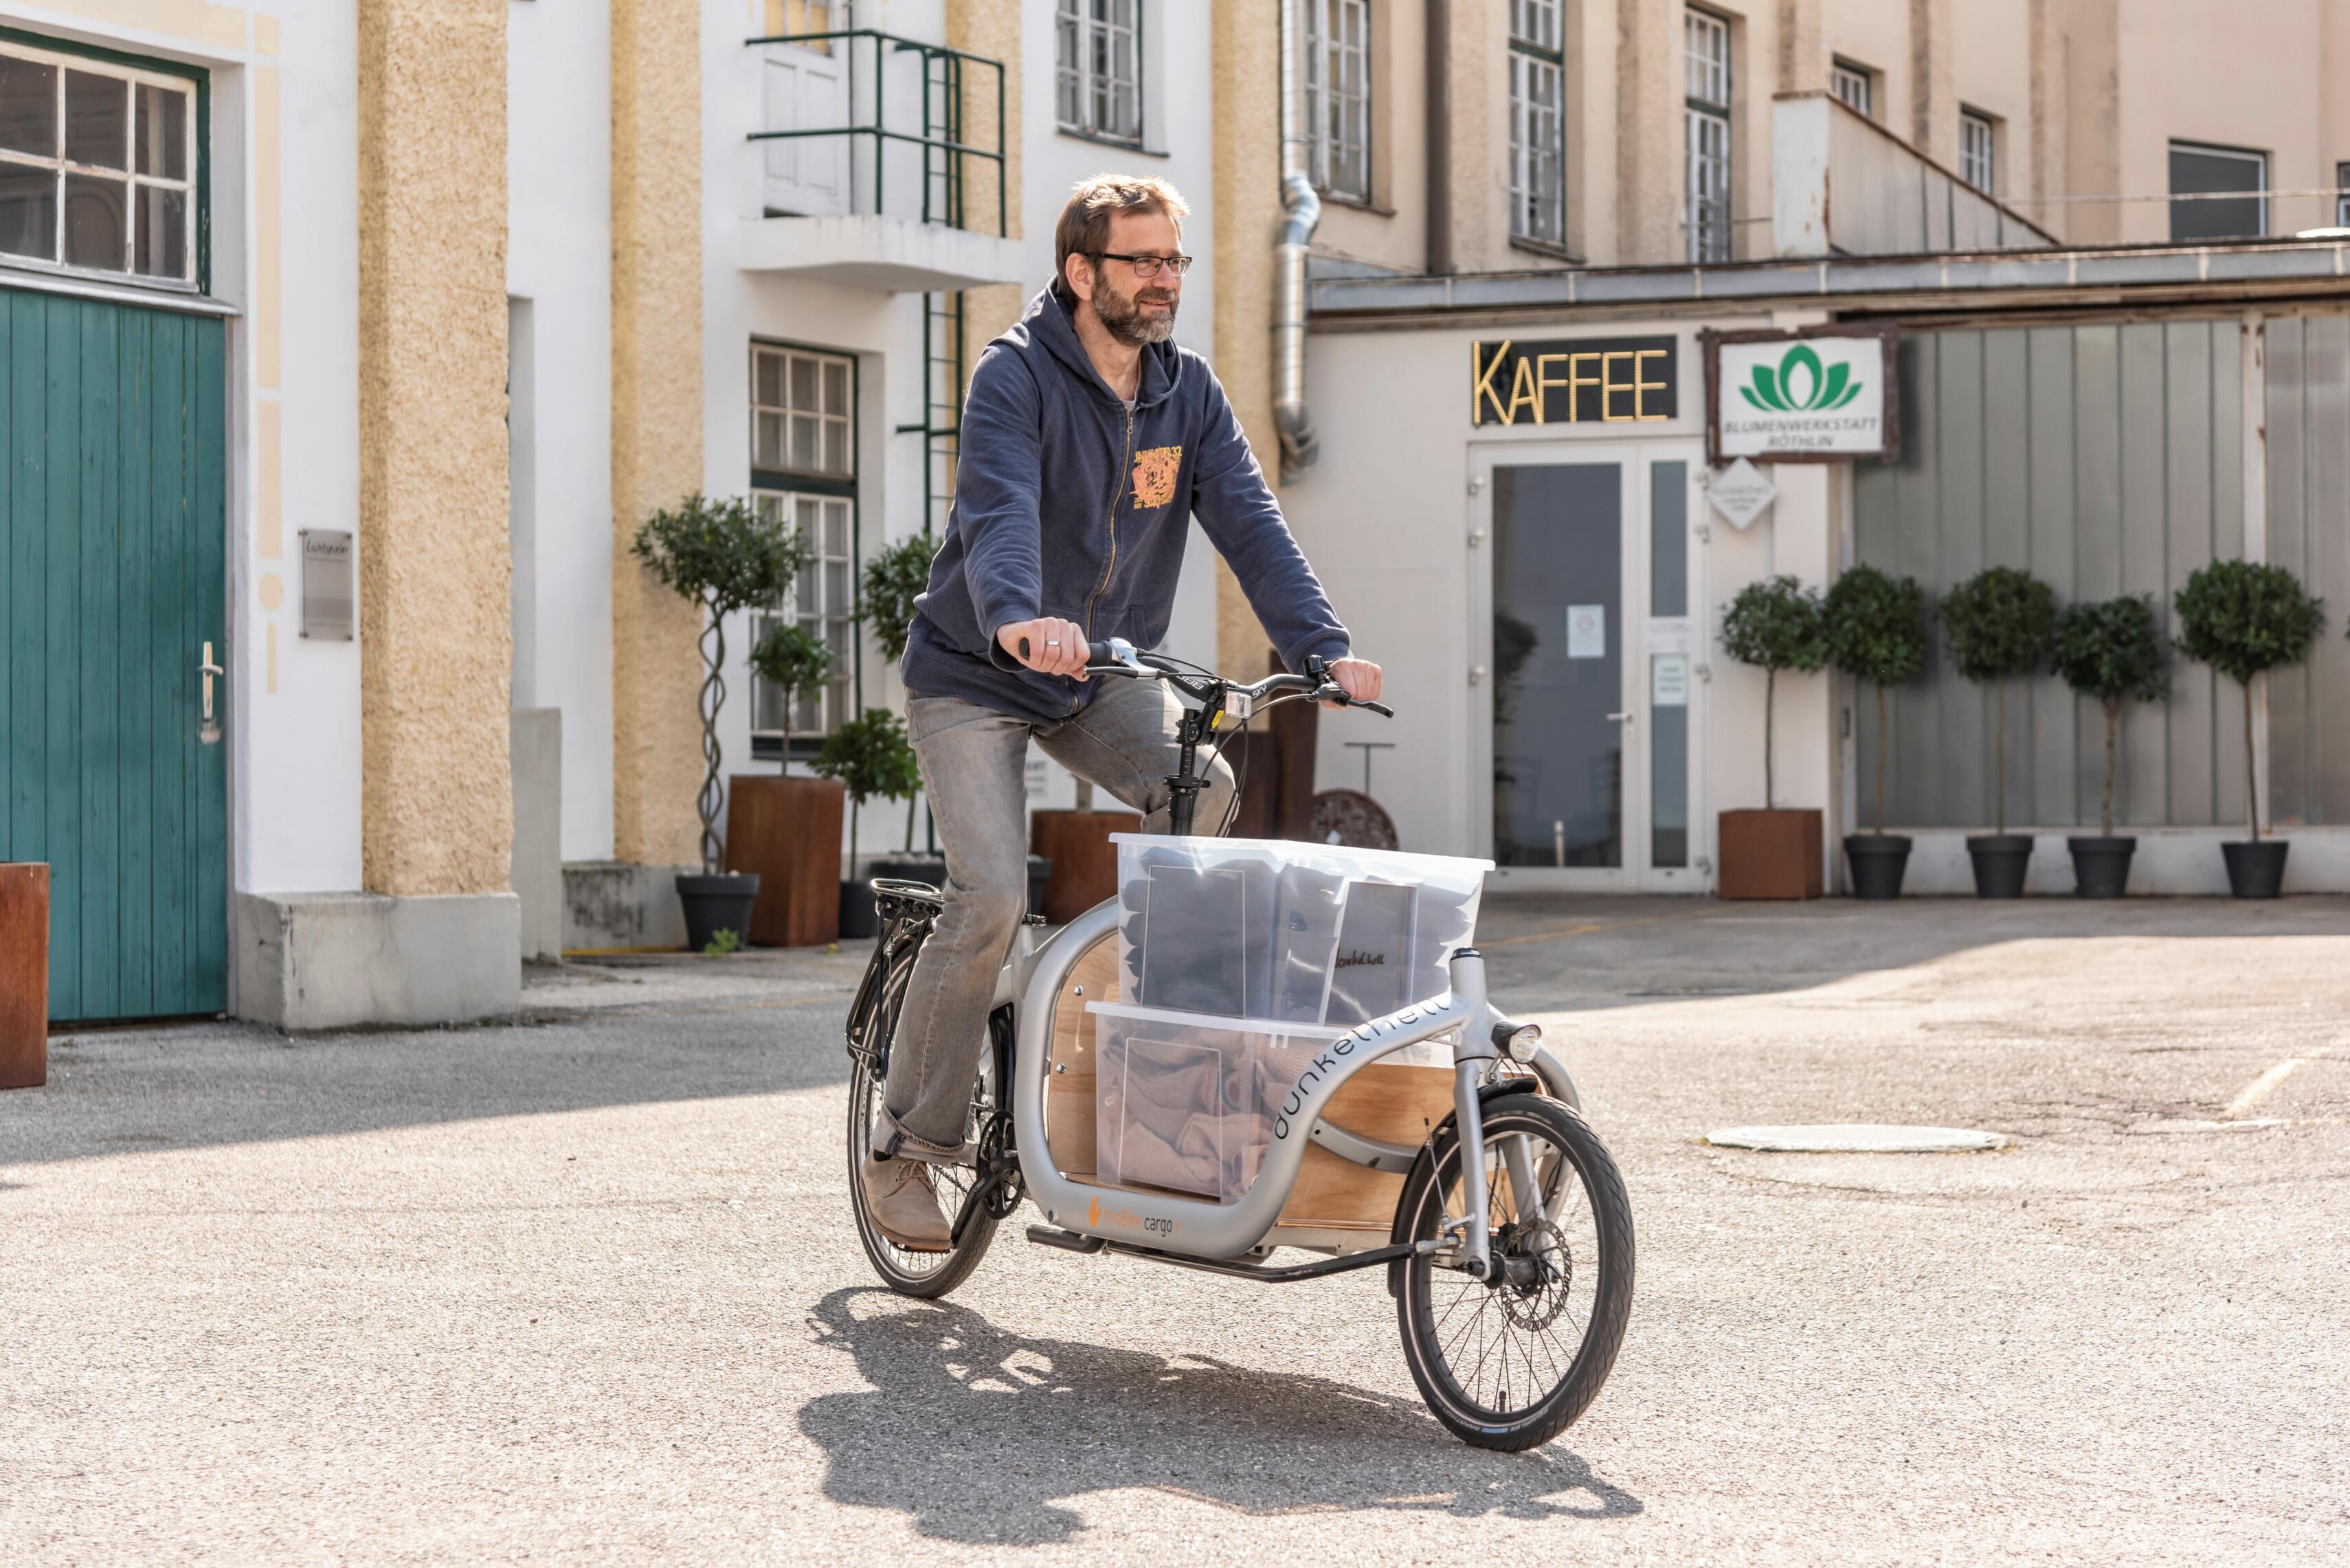 Peter Zechmeister liefert Kaffeebohnen mit dem Lastenrad aus